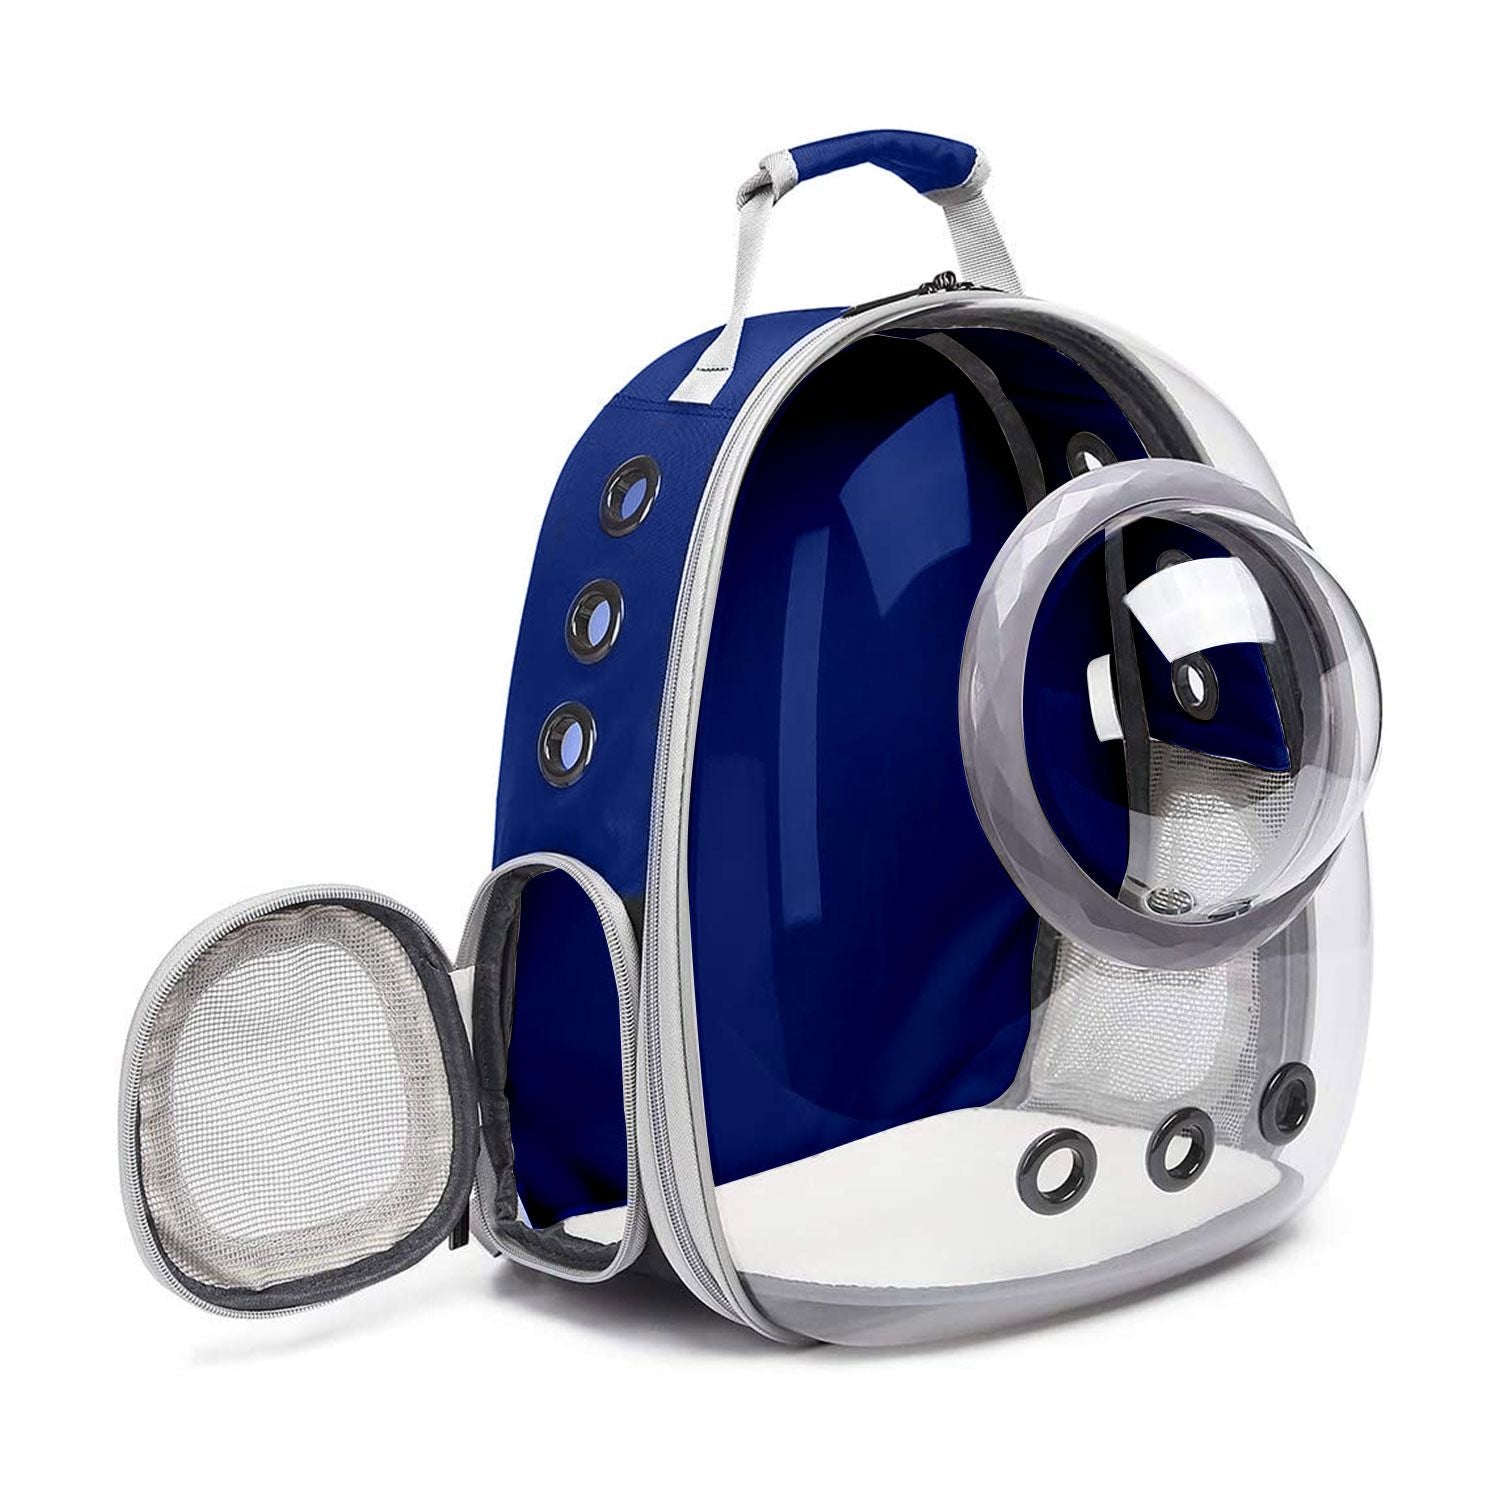 Space Capsule Backpack - Model 2 Blue